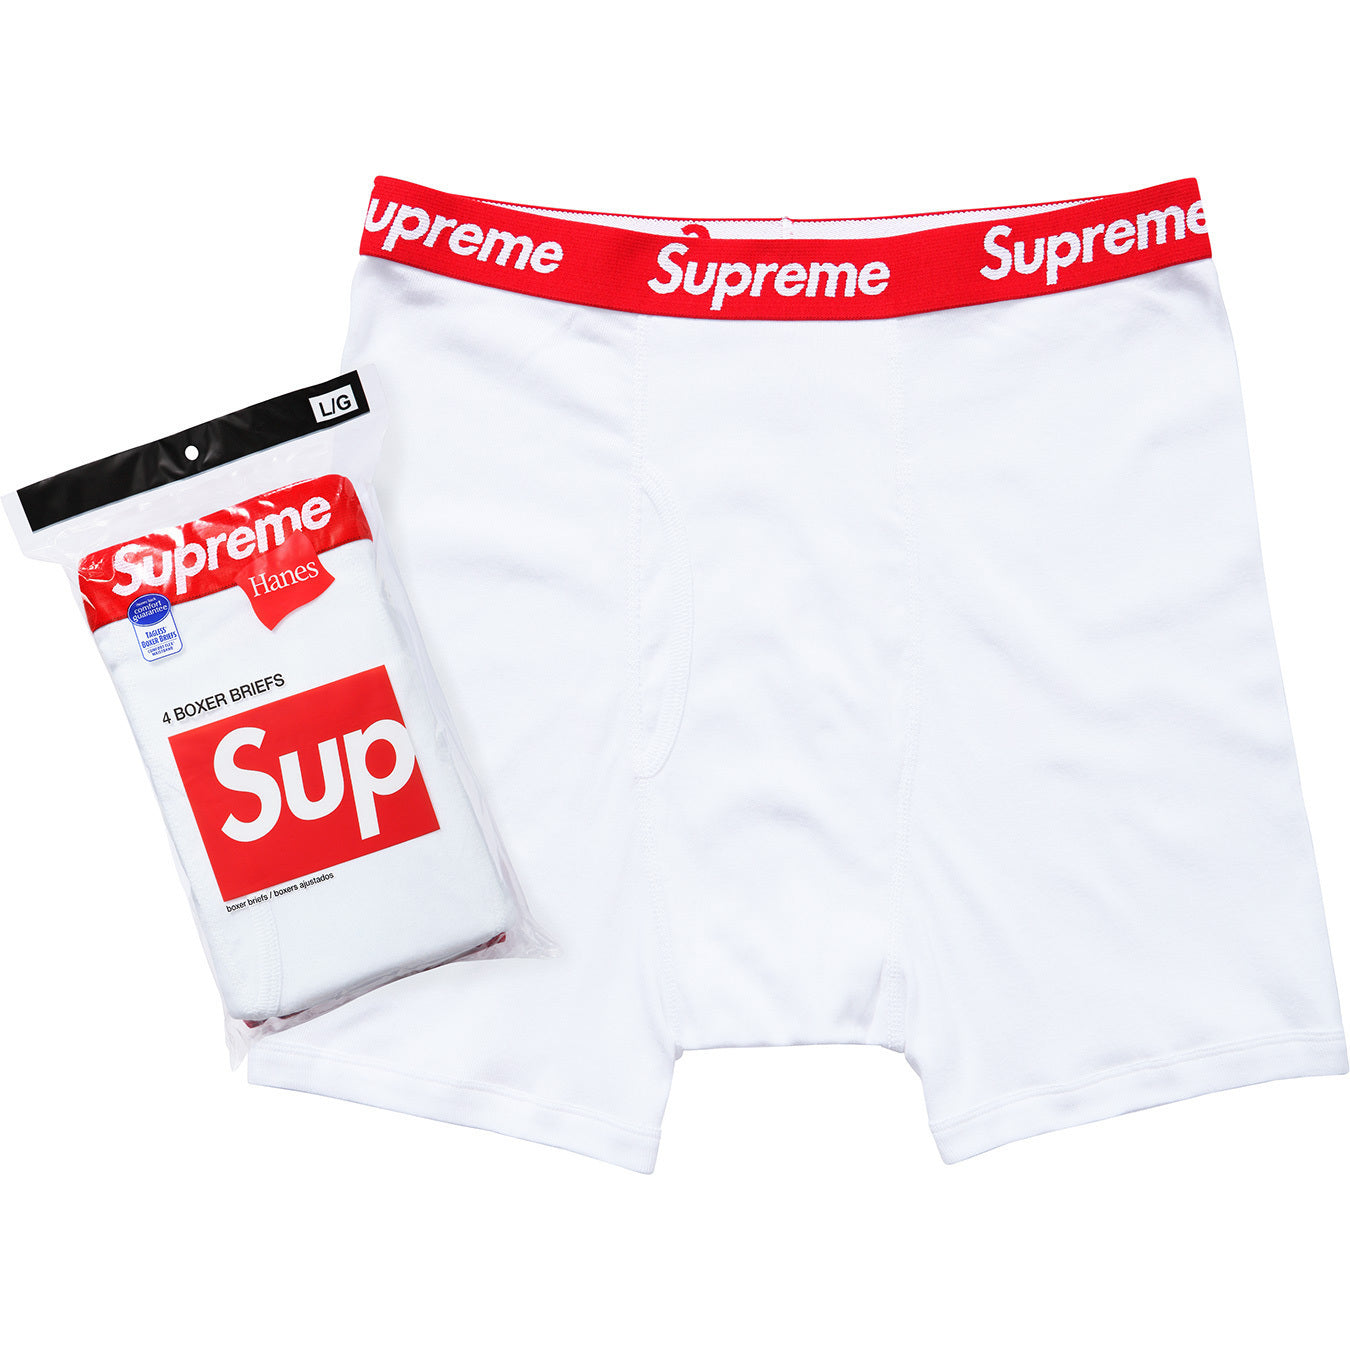 Supreme Hanes Boxer Briefs Black Underwear S-XL (4 in 1 Pack